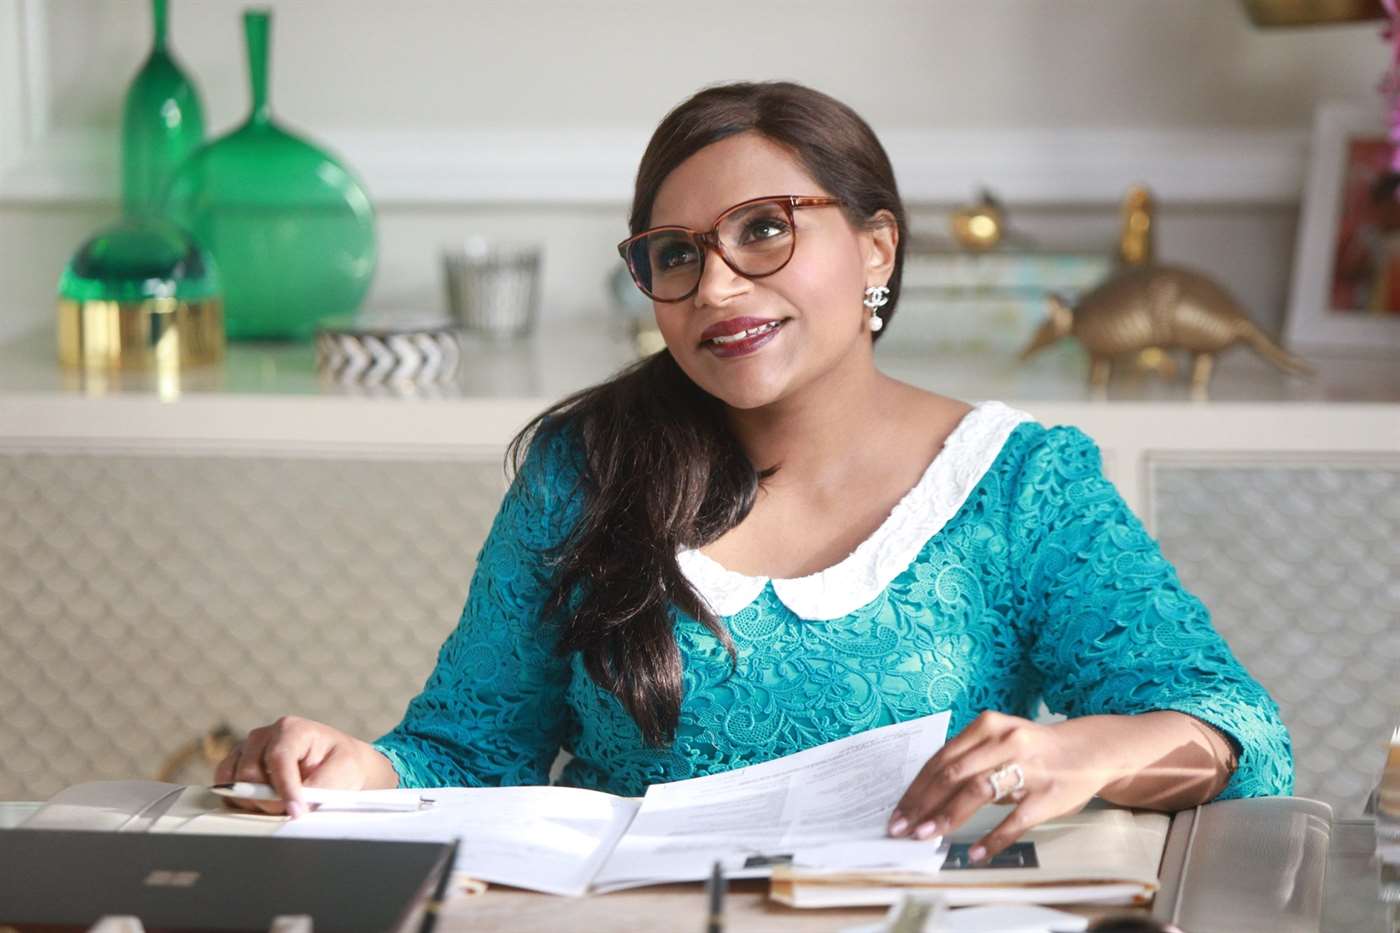 Nhân vật Mindi Lahiri ngồi sau bàn làm việc trong một cảnh của Dự án Mindi